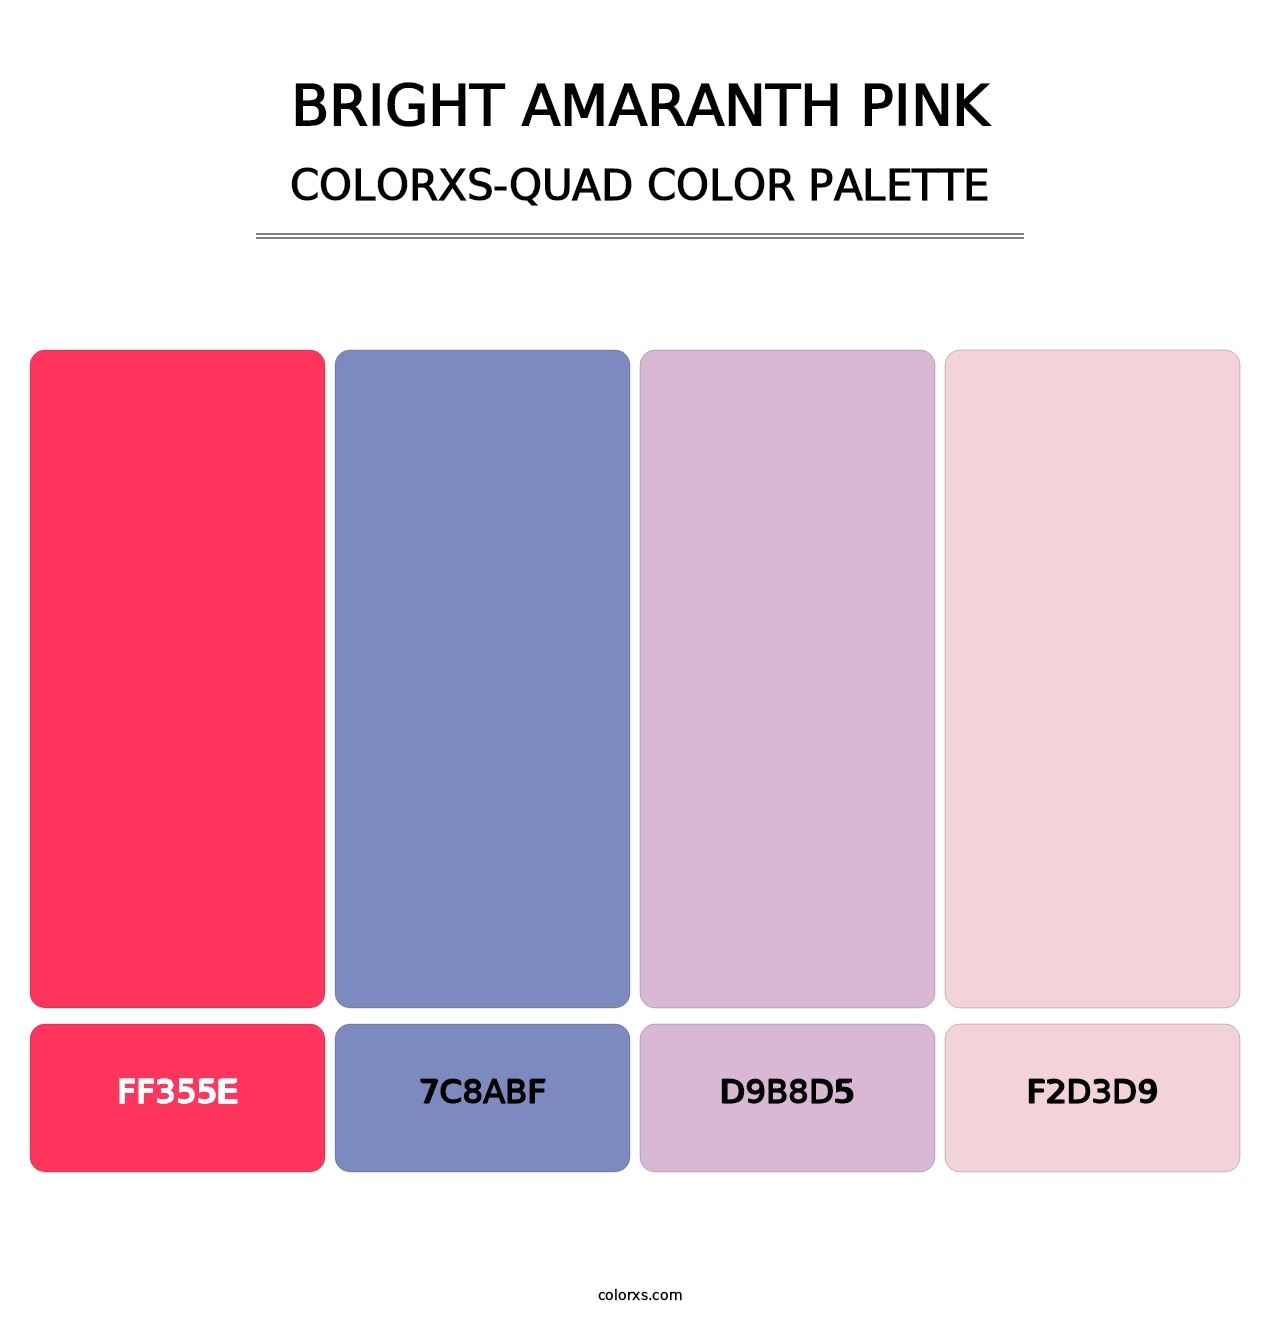 Bright Amaranth Pink - Colorxs Quad Palette